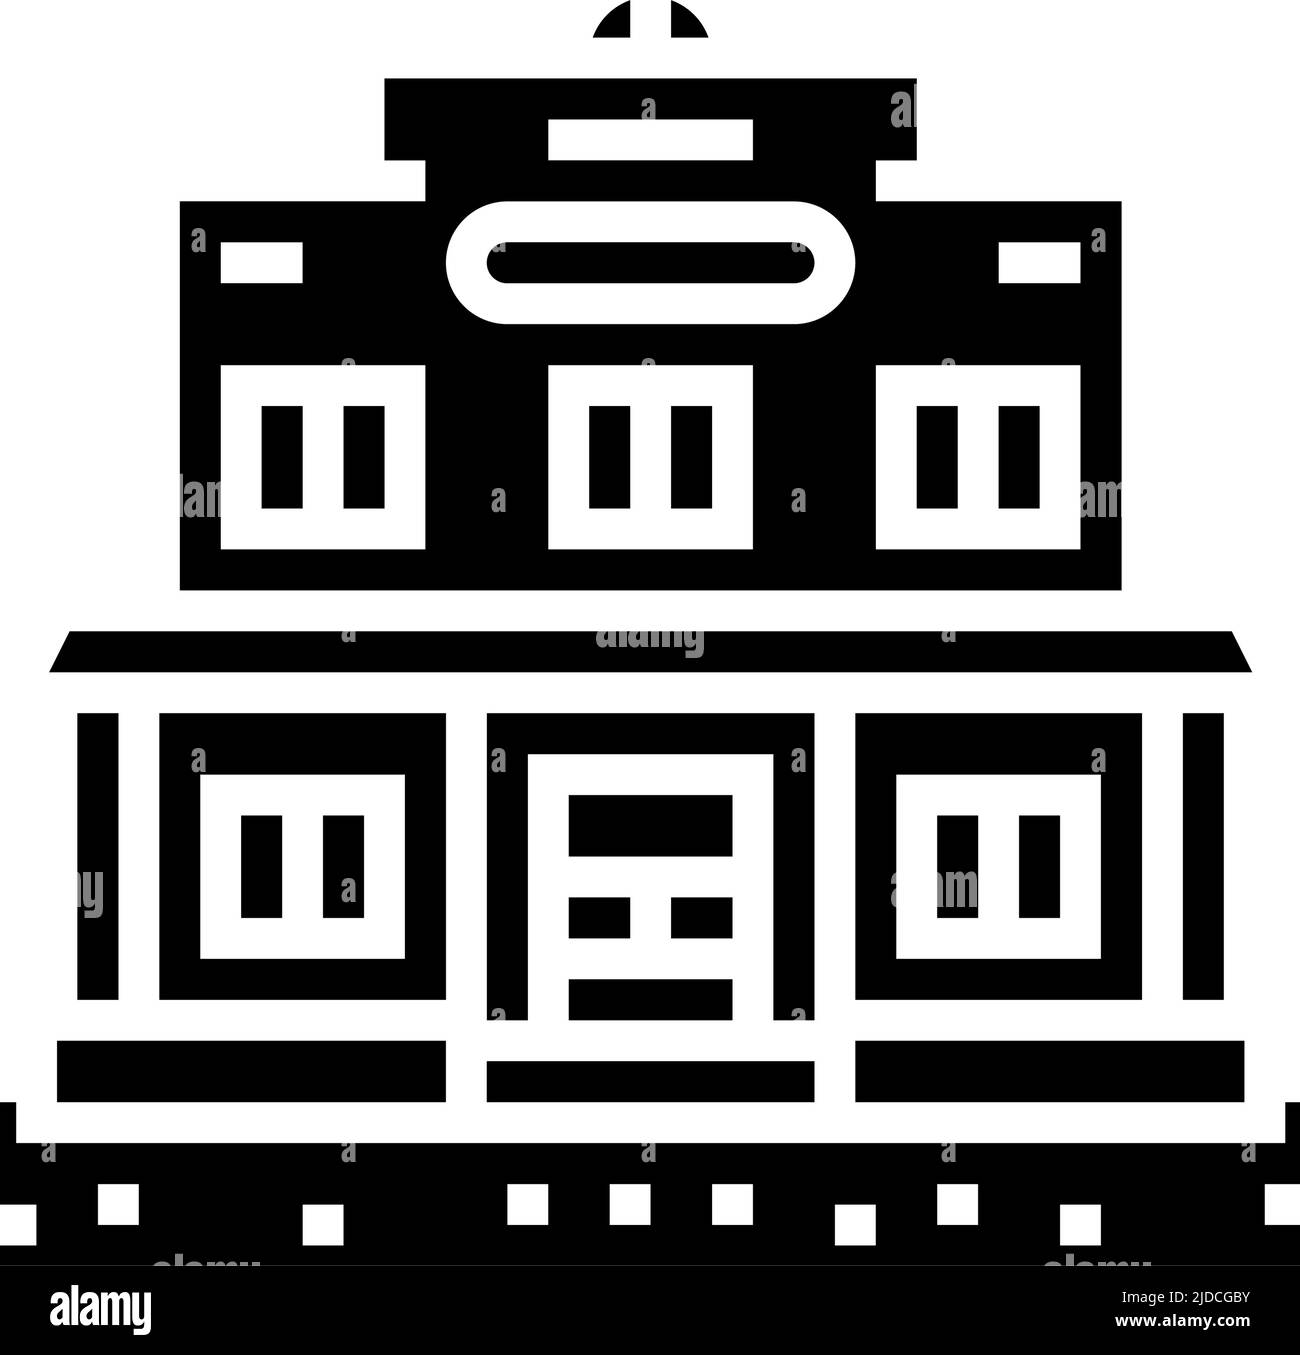 illustrazione vettoriale dell'icona glyph della barra di salone Illustrazione Vettoriale